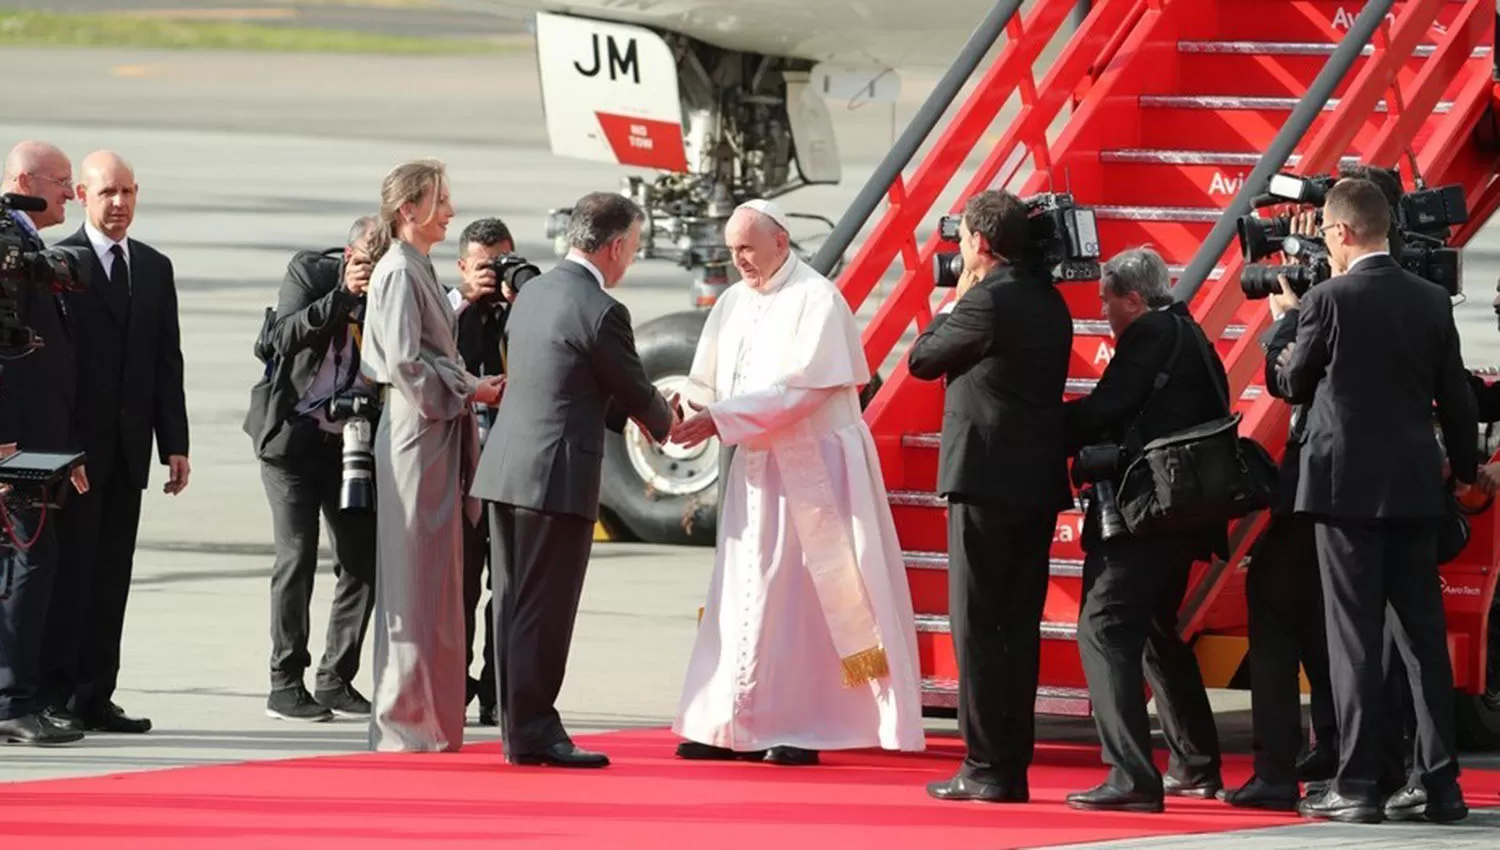 El presidente de Colombia, Juan Manuel Santos, acompañado de su esposa, la primera dama María Clemencia de Santos, reciben al Papa Francisco a su llegada a la base aérea de Catam hoy. FOTO TOMADA DE CLARIN.COM